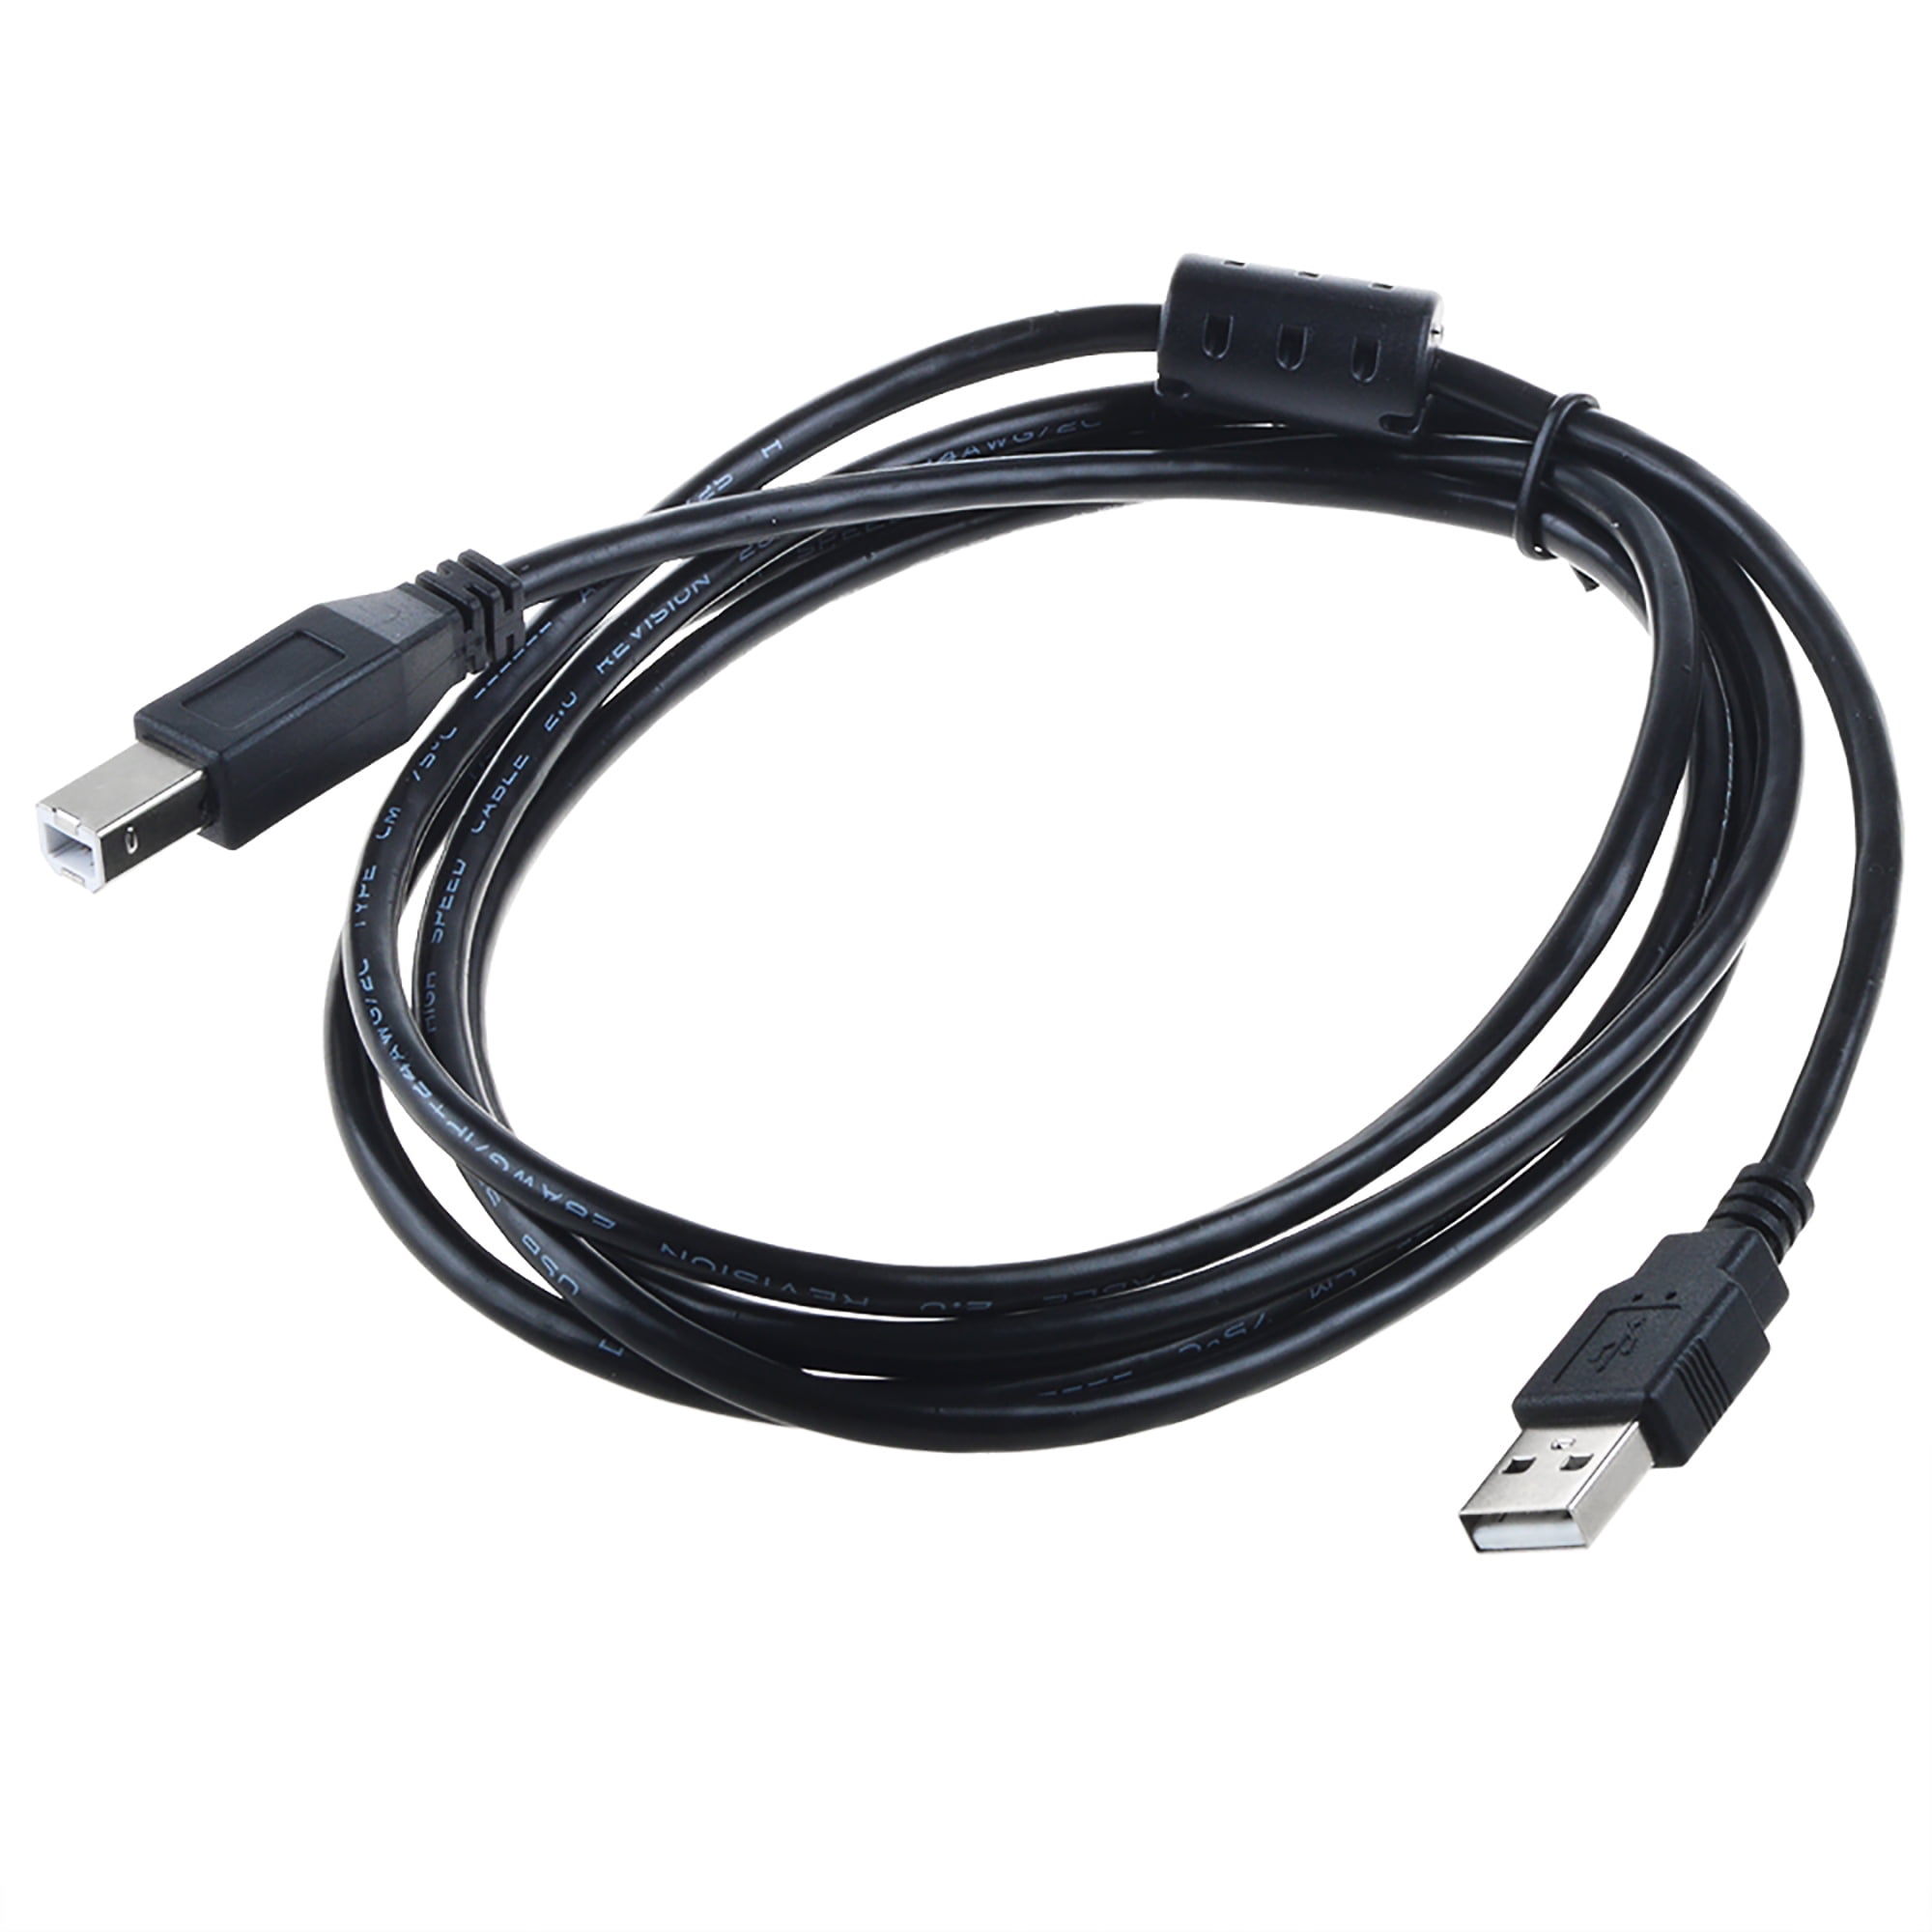 Produktion Mere end noget andet Hjælp PKPOWER 6.6ft USB Cable for HP Deskjet 3050A 3051A 3052A 3055A 3056A 3057A  3059A Printer - Walmart.com